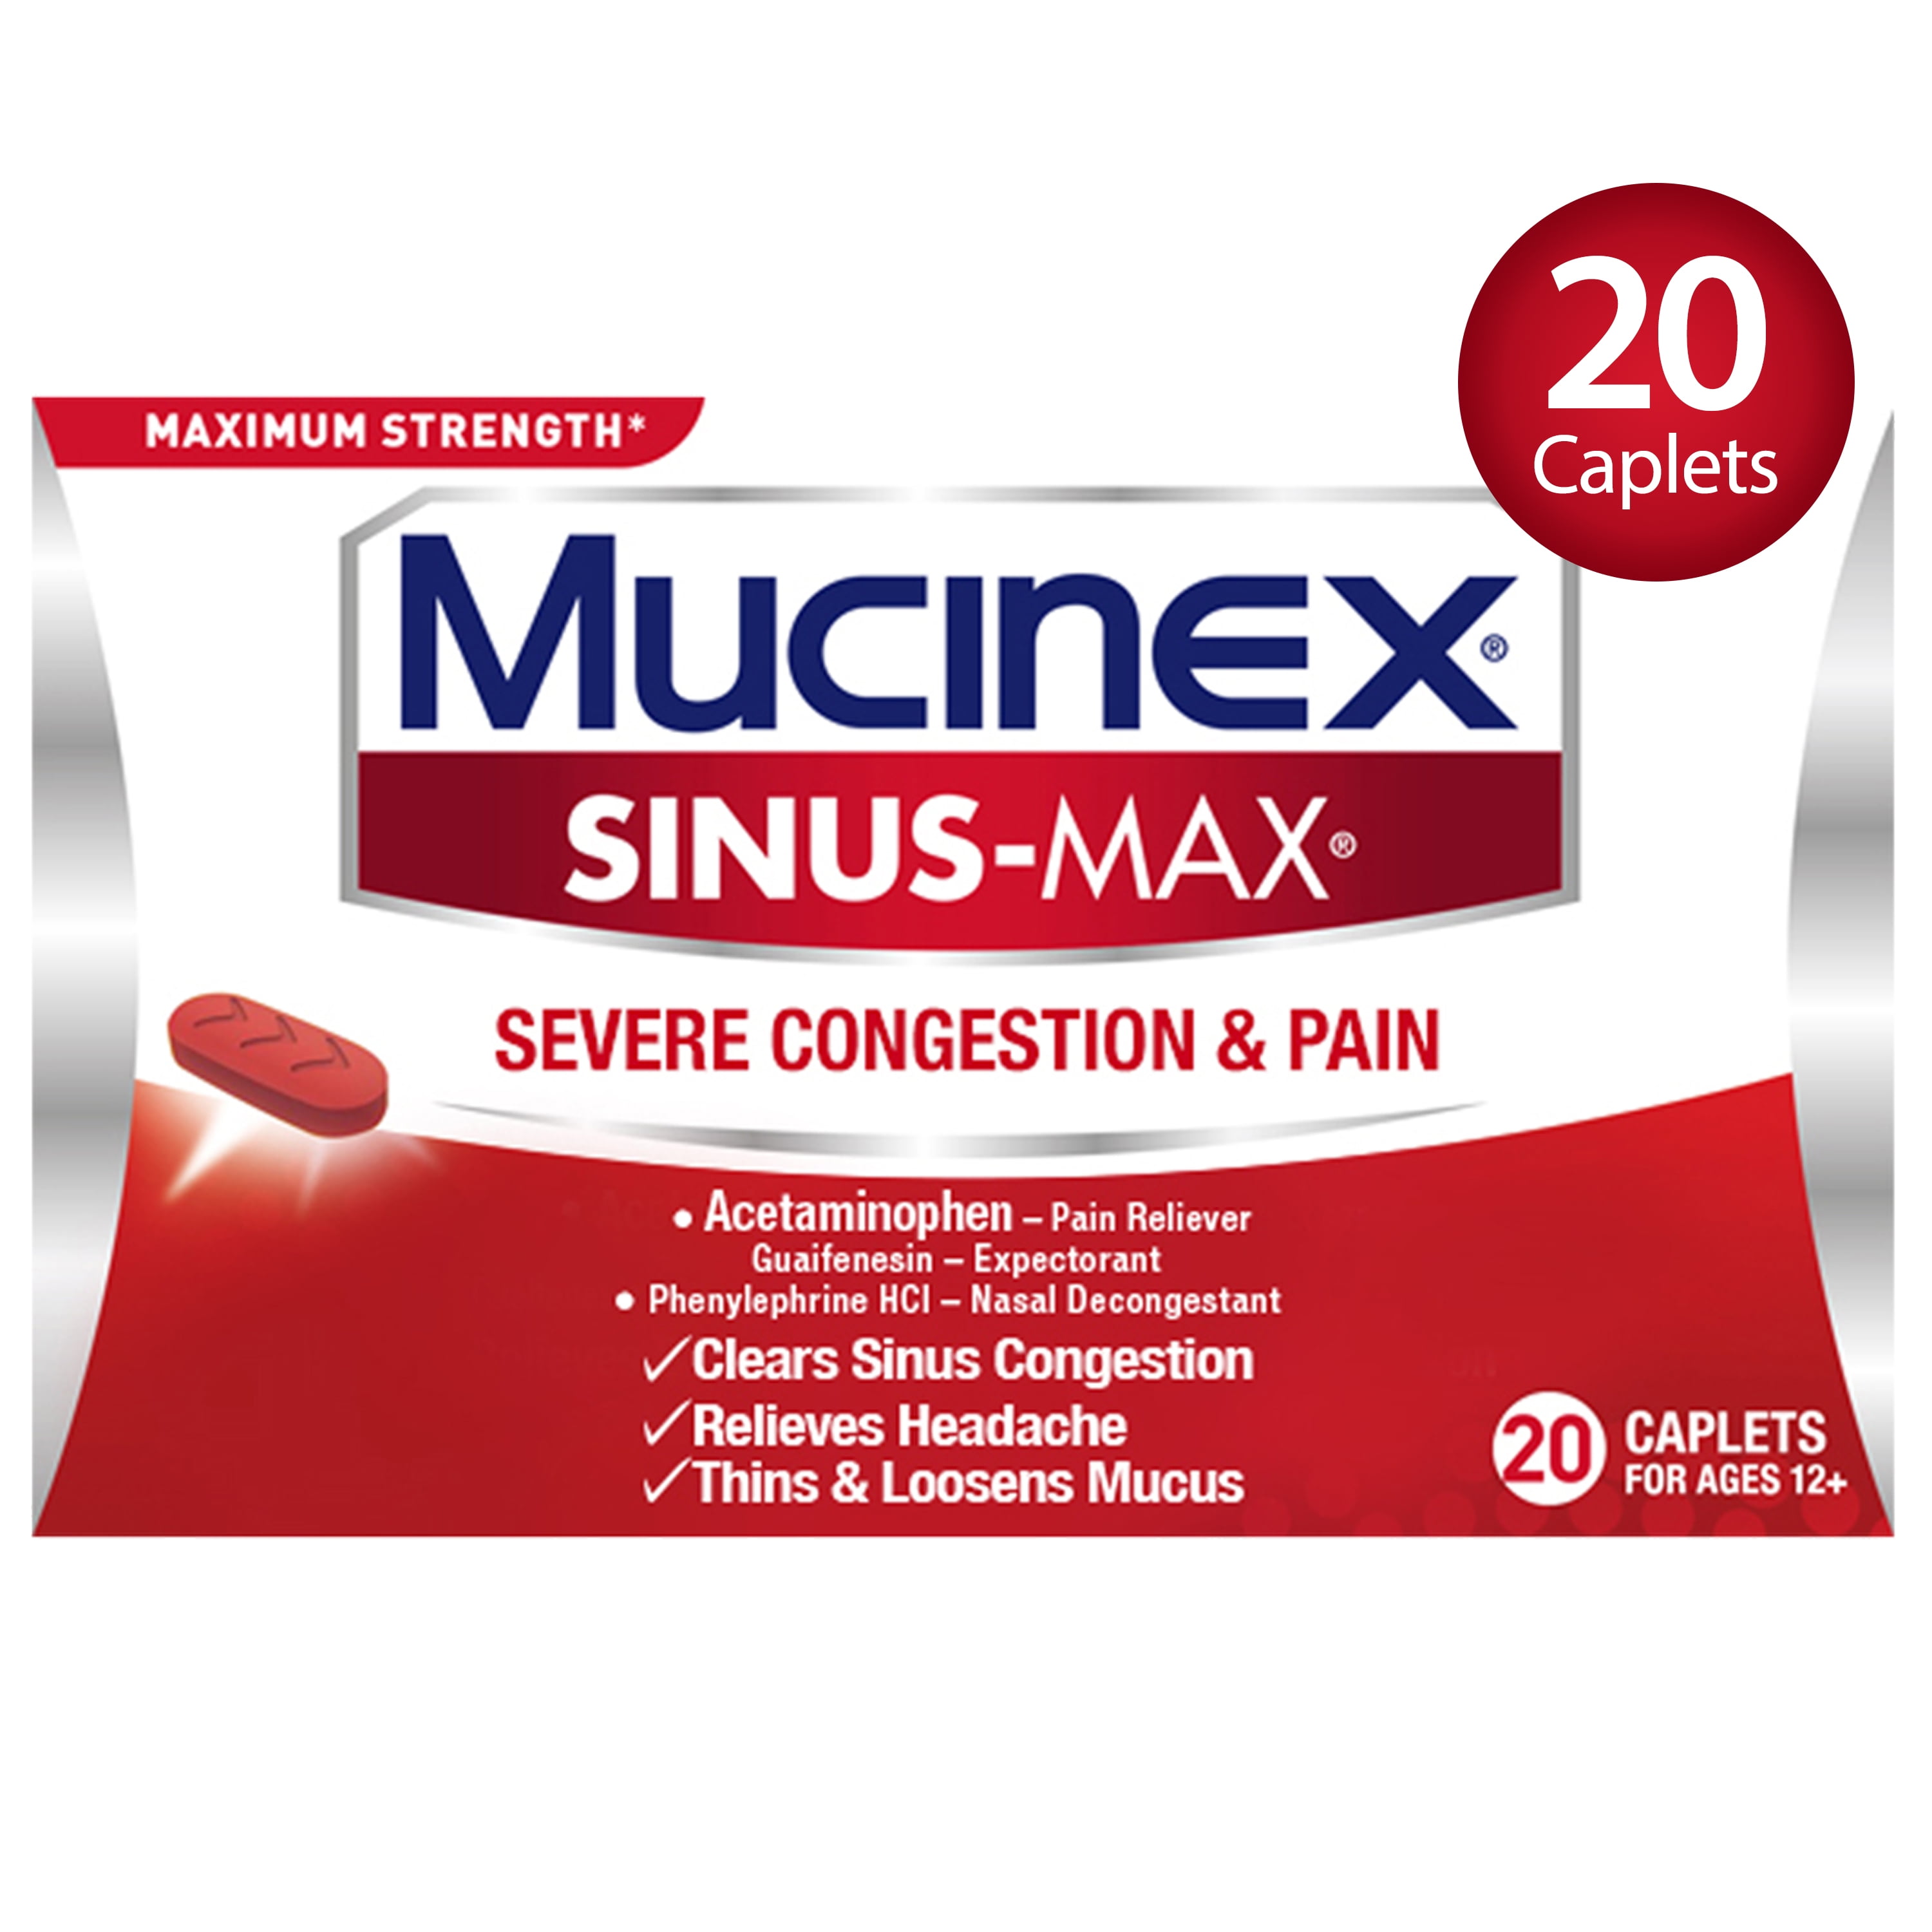 mucinex-sinus-max-maximum-strength-severe-congestion-pain-caplets-20